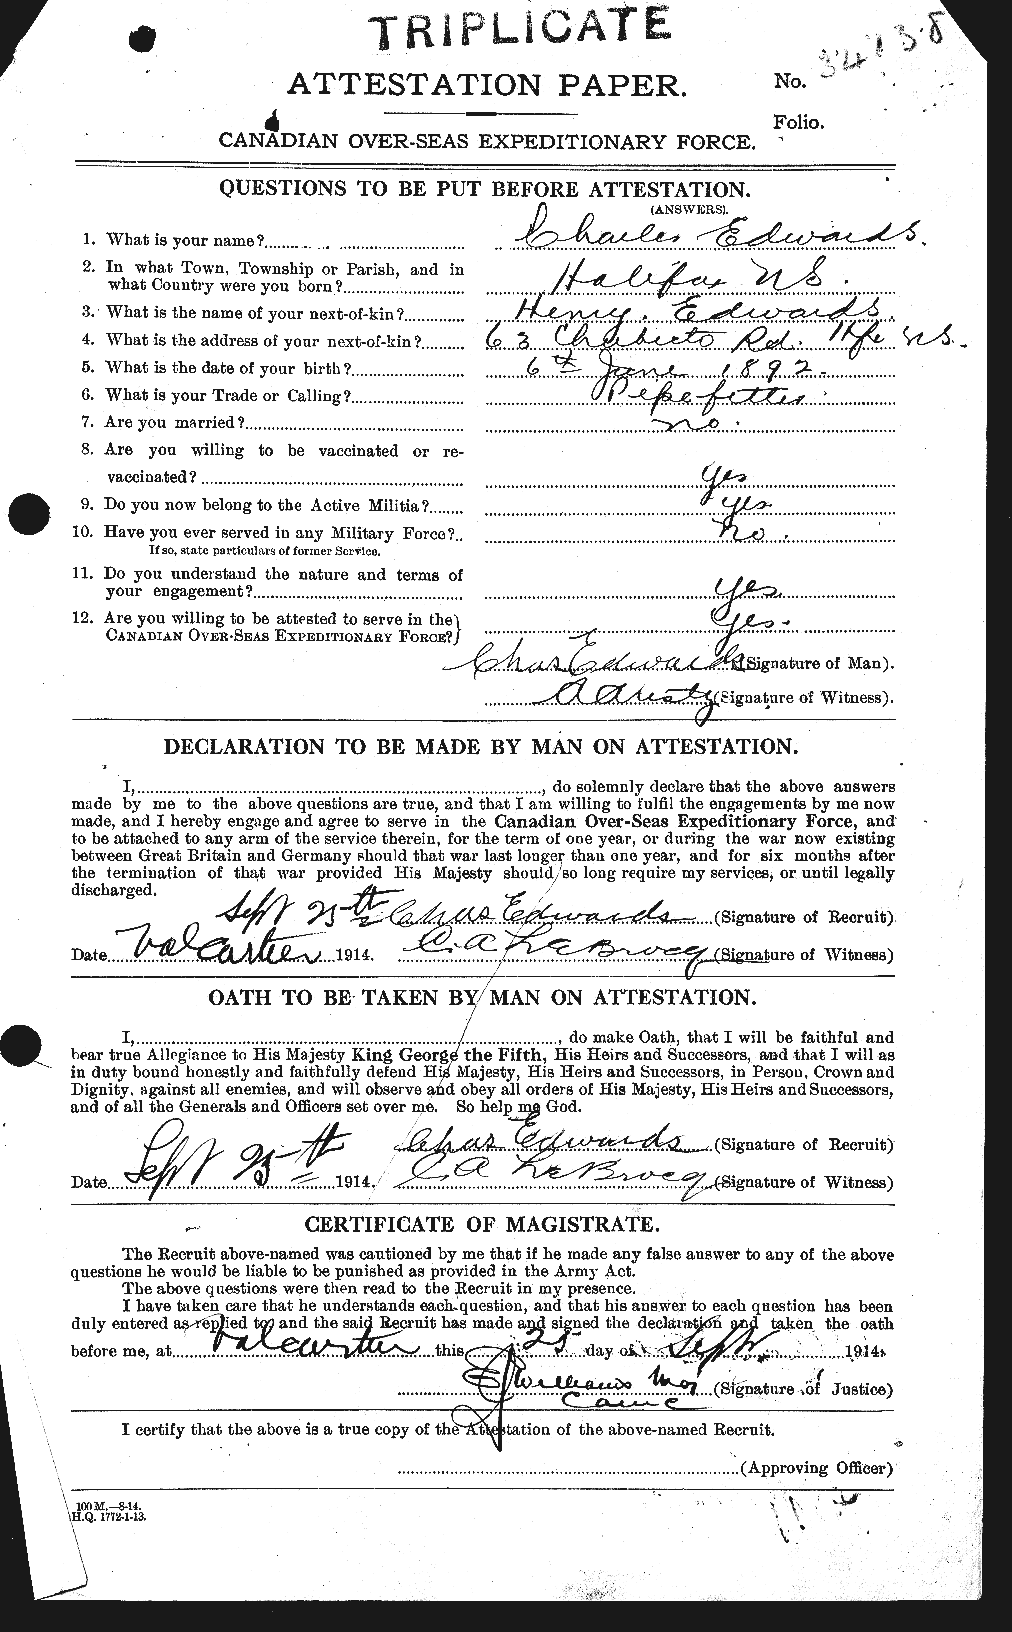 Dossiers du Personnel de la Première Guerre mondiale - CEC 307822a